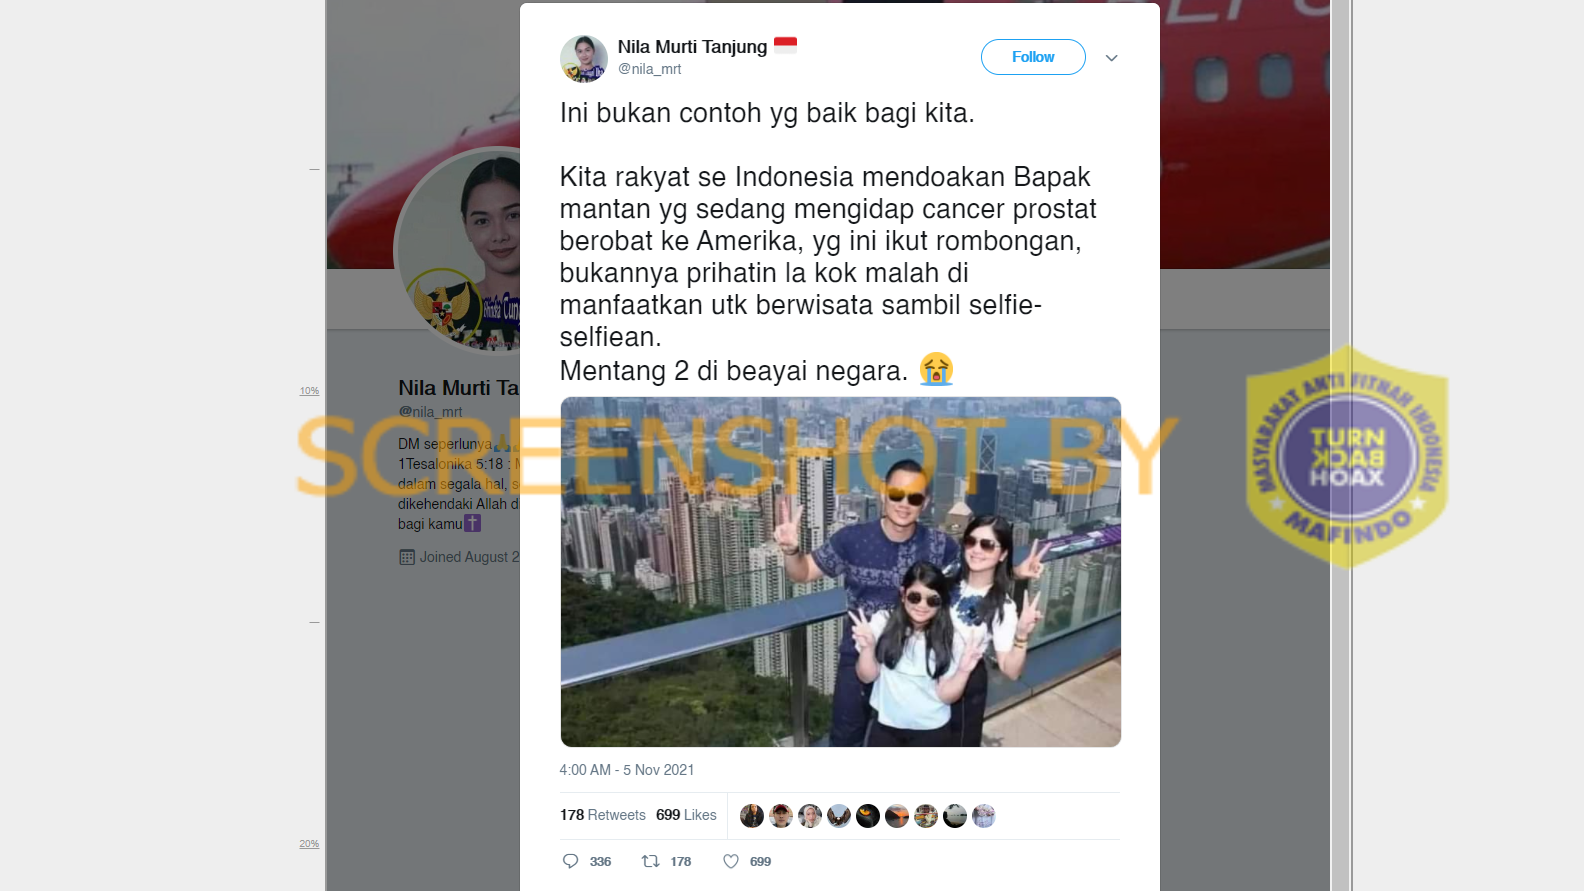 [SALAH] Foto Keluarga Agus Harimurti Yudhoyono Berwisata saat SBY Berobat Kanker Prostat di AS